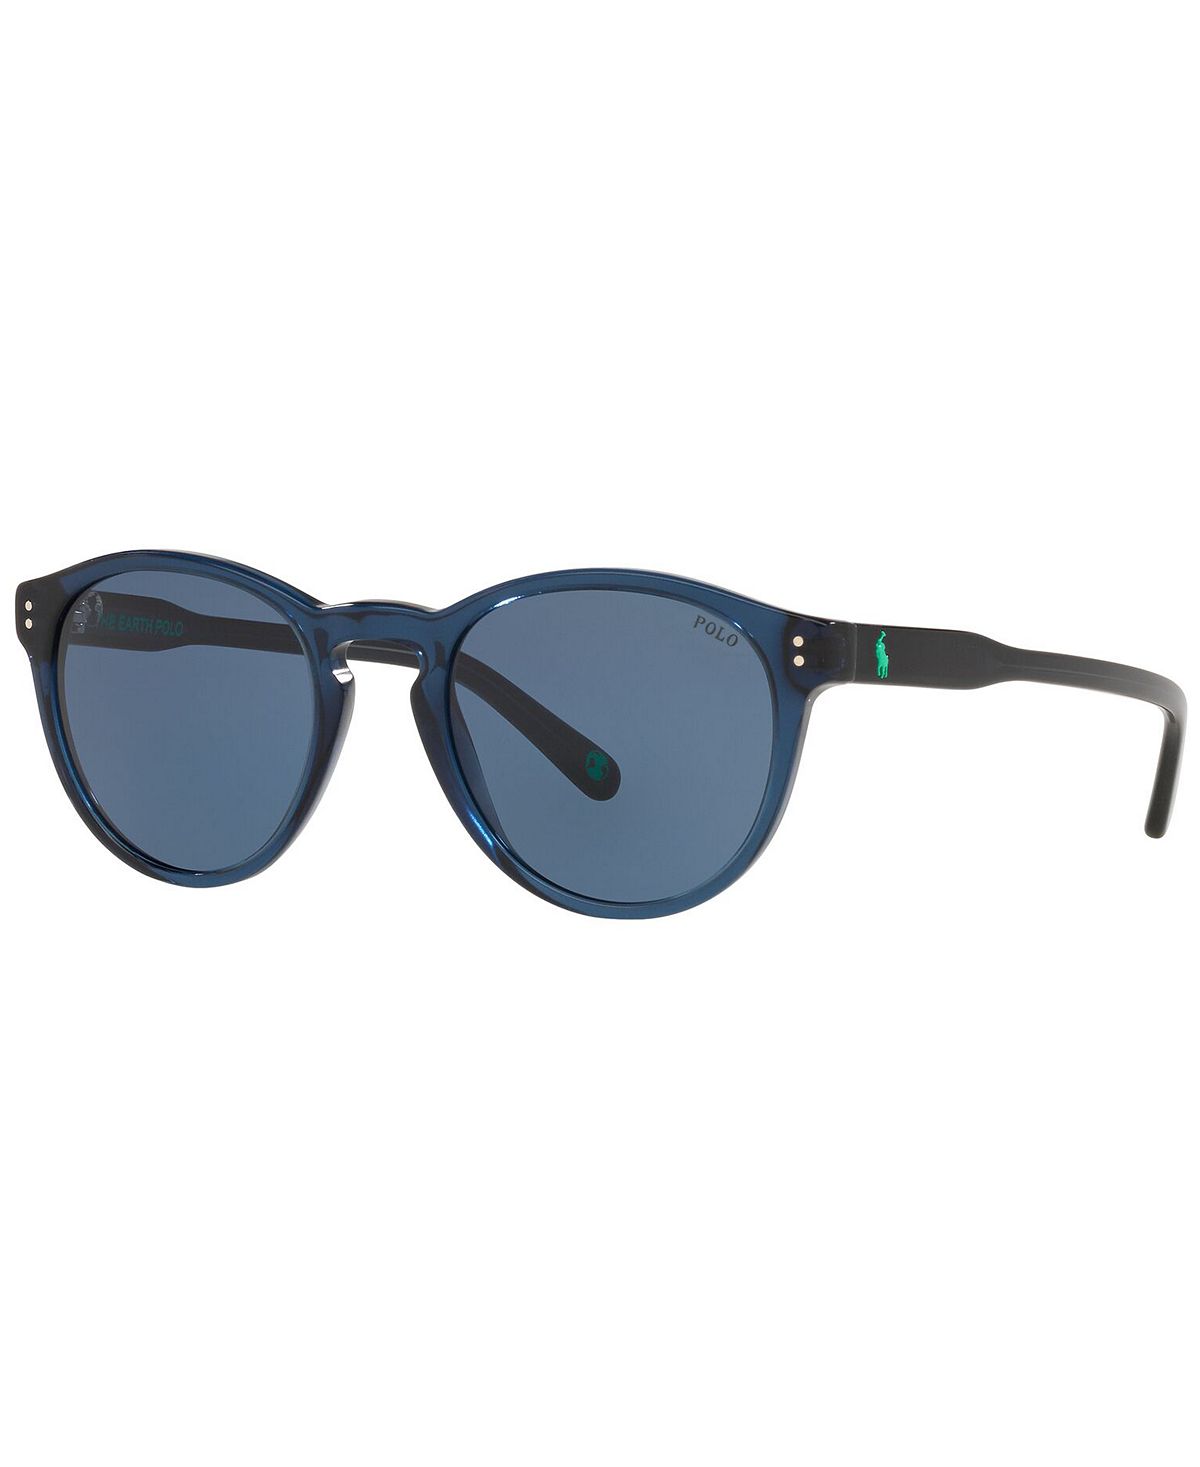 Мужские солнцезащитные очки, PH4172 50 Polo Ralph Lauren мини комод росспласт 4 яруса dark blue transparent